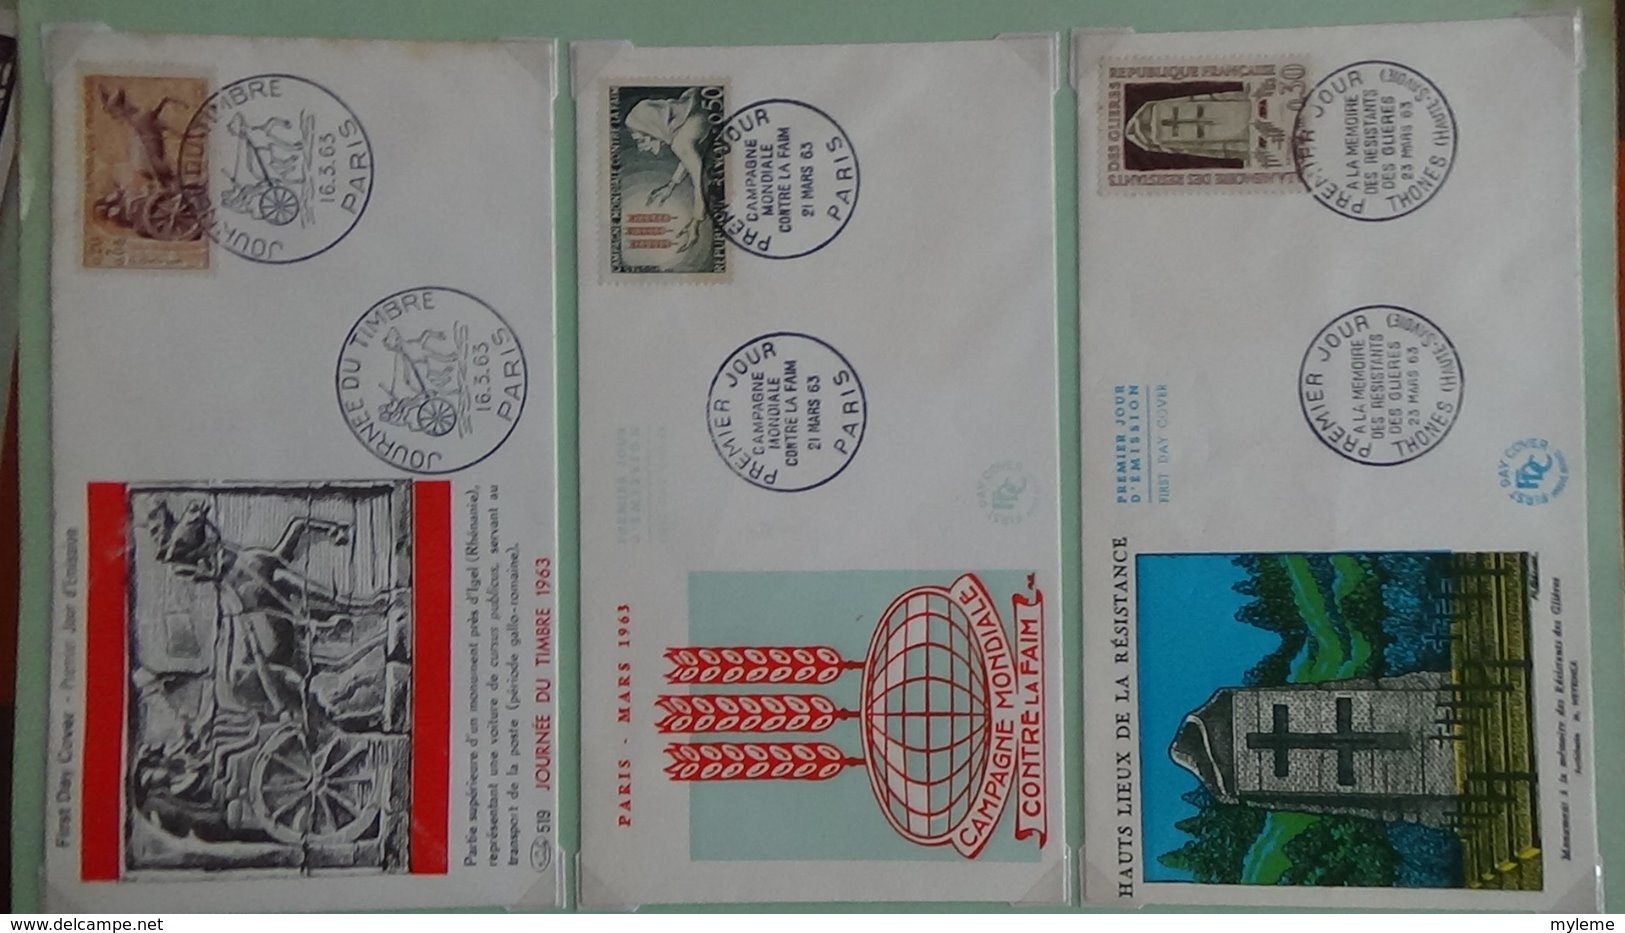 62 enveloppes 1er jour de France 1963 PORT OFFERT (lettre verte)  si ce lot dépasse les 10 euros soit 15cts/pièce